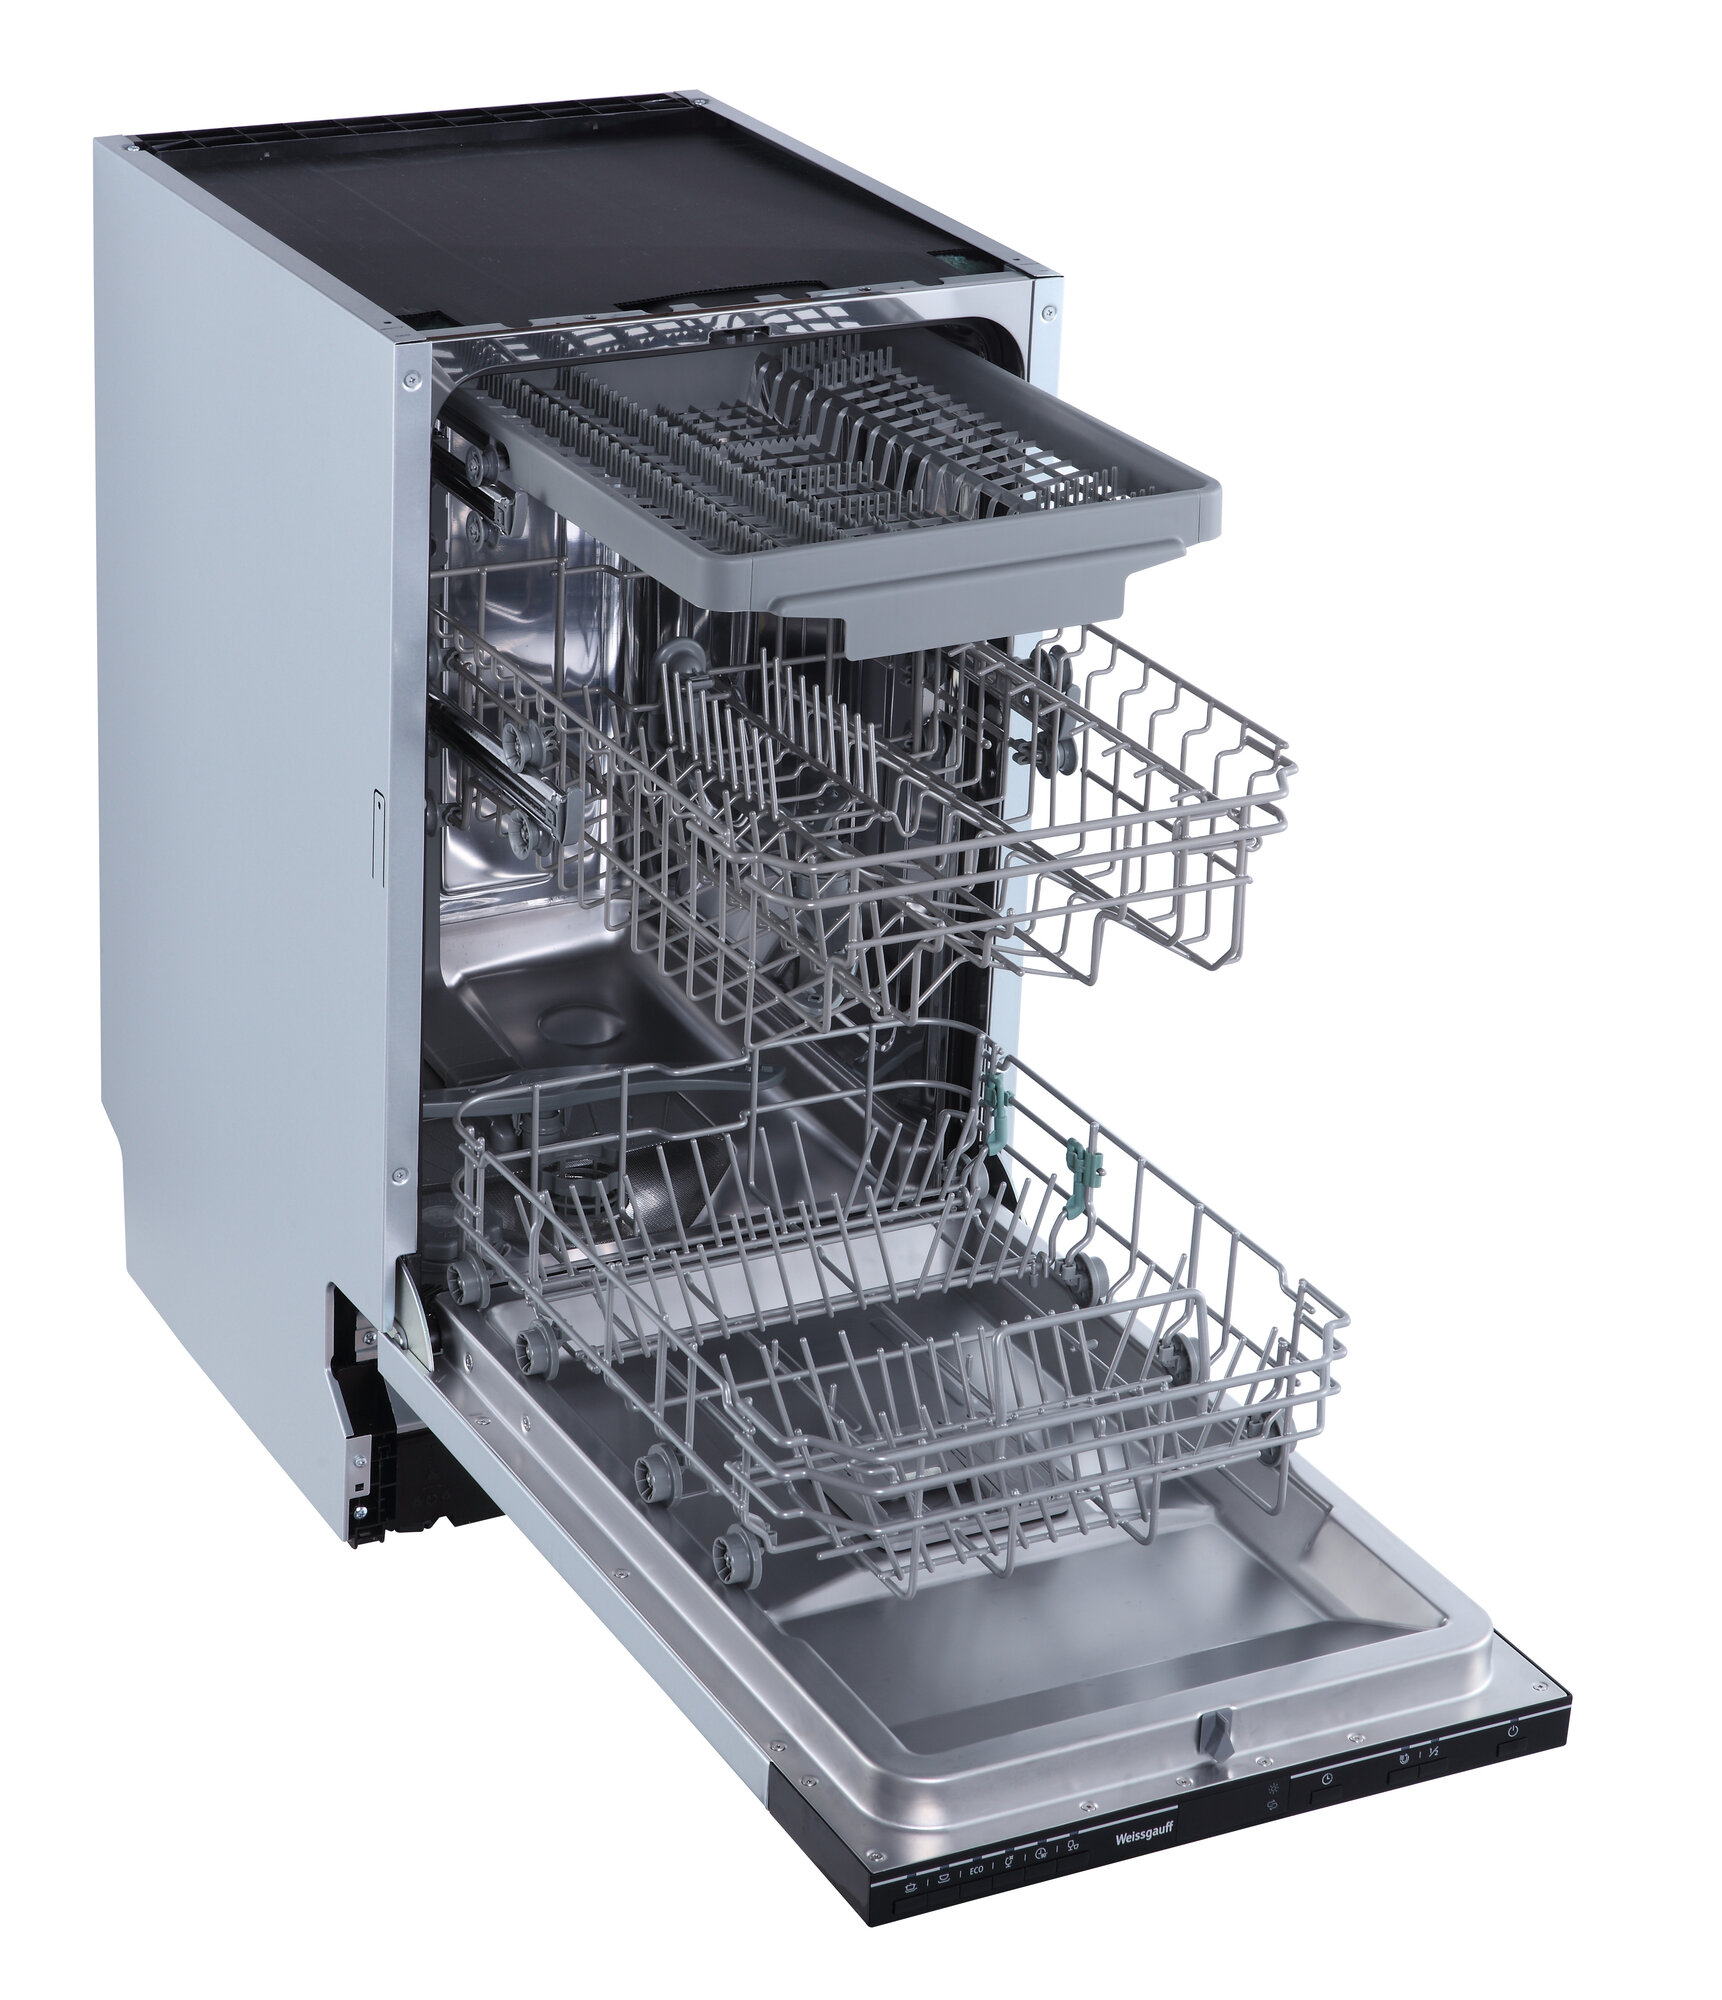 Встраиваемая посудомоечная машина Weissgauff BDW 4536 D,3 года гарантии, З корзины, Дисплей, Электронное управление, 10 комплектов, 6 программ, Быстрая мойка, Половинная загрузка, Тихий режим работы